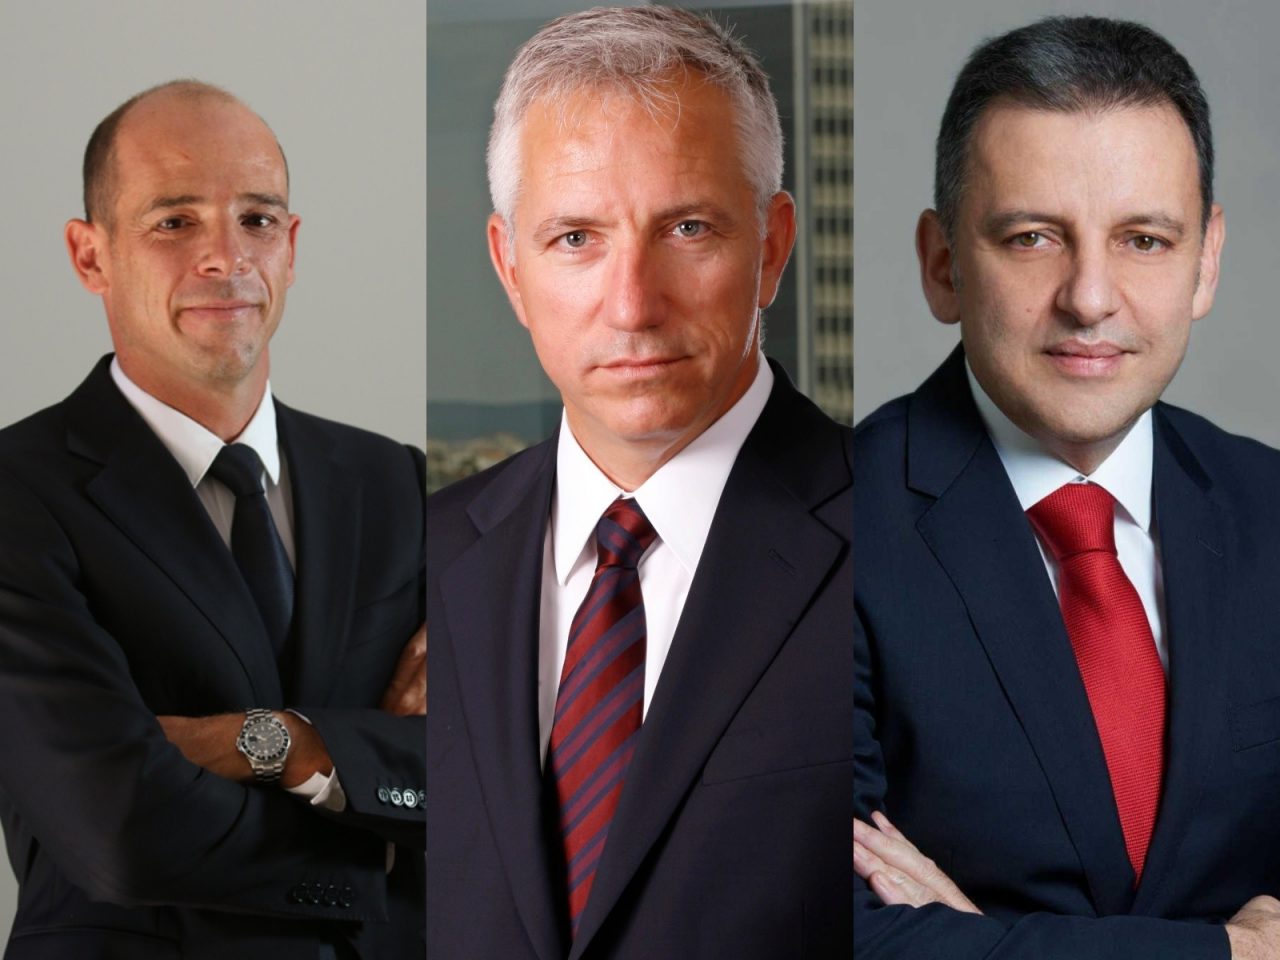 Χάρης Κυριακόπουλος,Διευθύνων Σύμβουλος WInd, Μιχάλης Τσαμάζ, Πρόεδρος και Διευθύνων Σύμβουλος ΟΤΕ, Χάρης Μπρουμίδης, Διευθύνων Σύμβουλος Vodafone